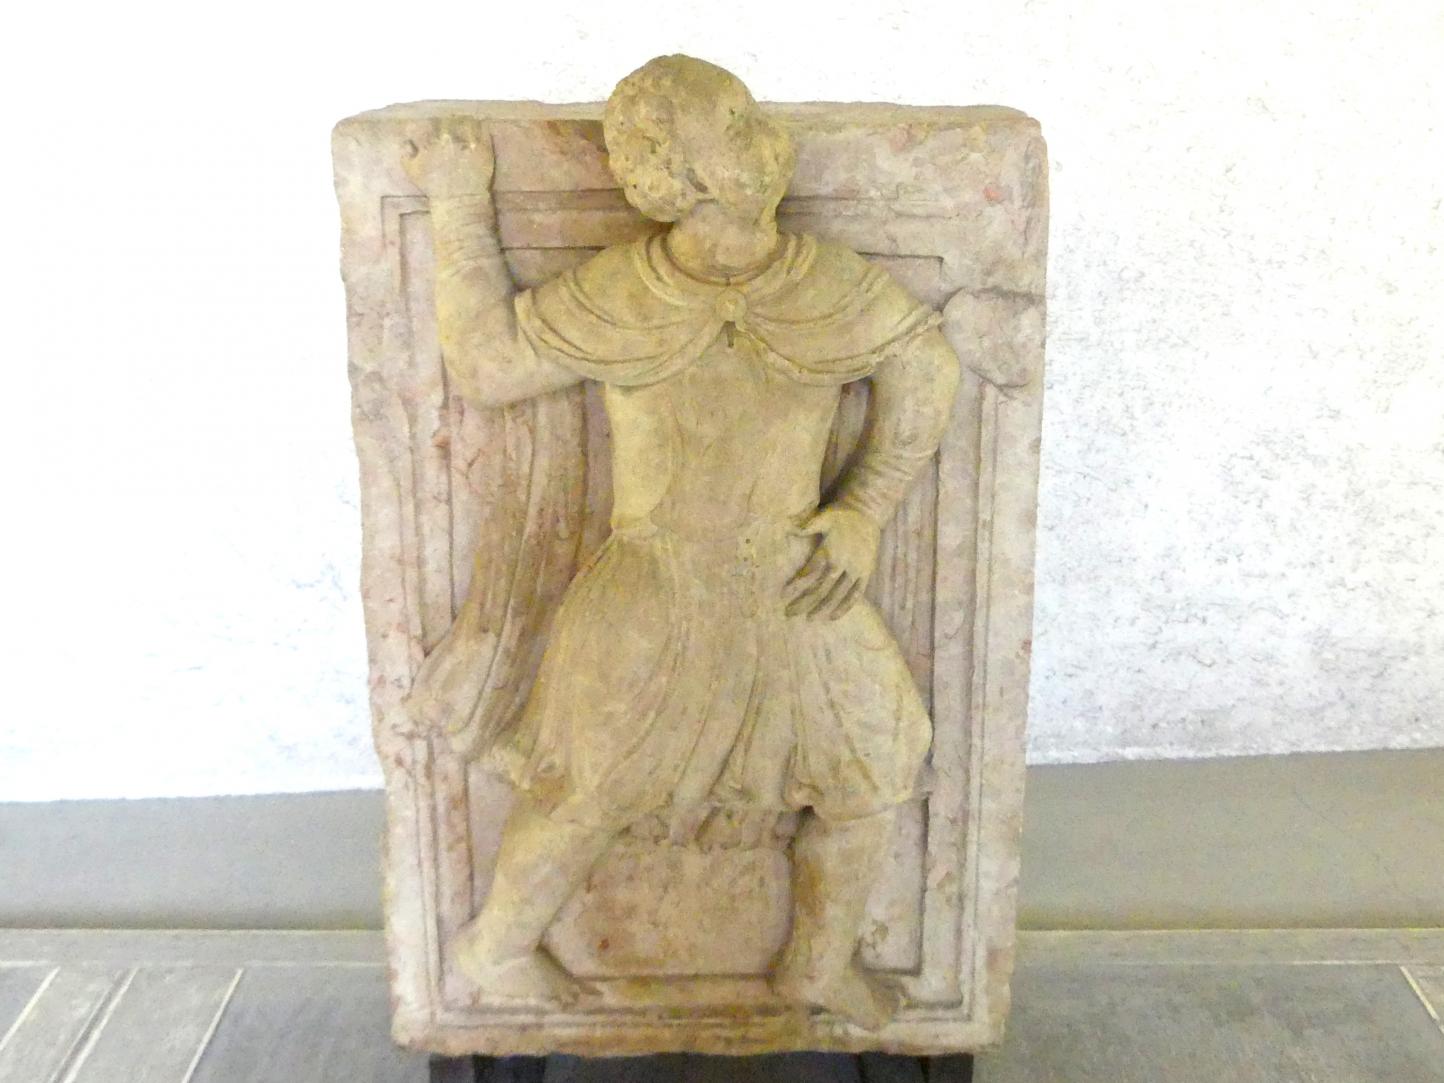 Männliche Figur, Verona, Museo di Castelvecchio, Saal 1, 13. Jhd.